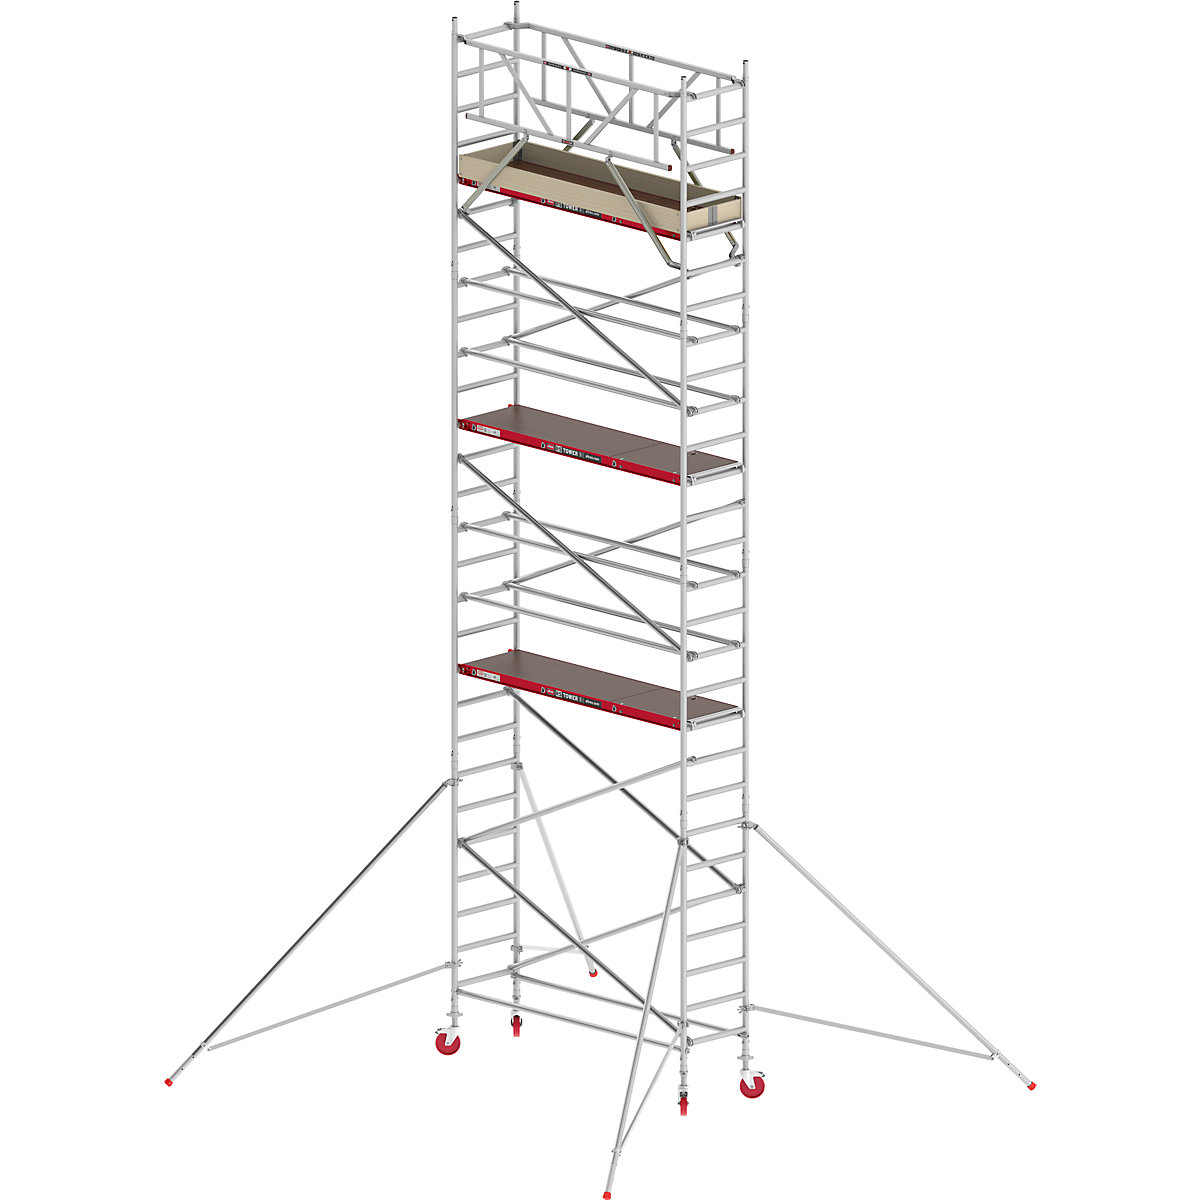 Uska pomična skela RS TOWER 41 – Altrex, drvena platforma, dužina 1,85 m, radna visina 9,20 m-5